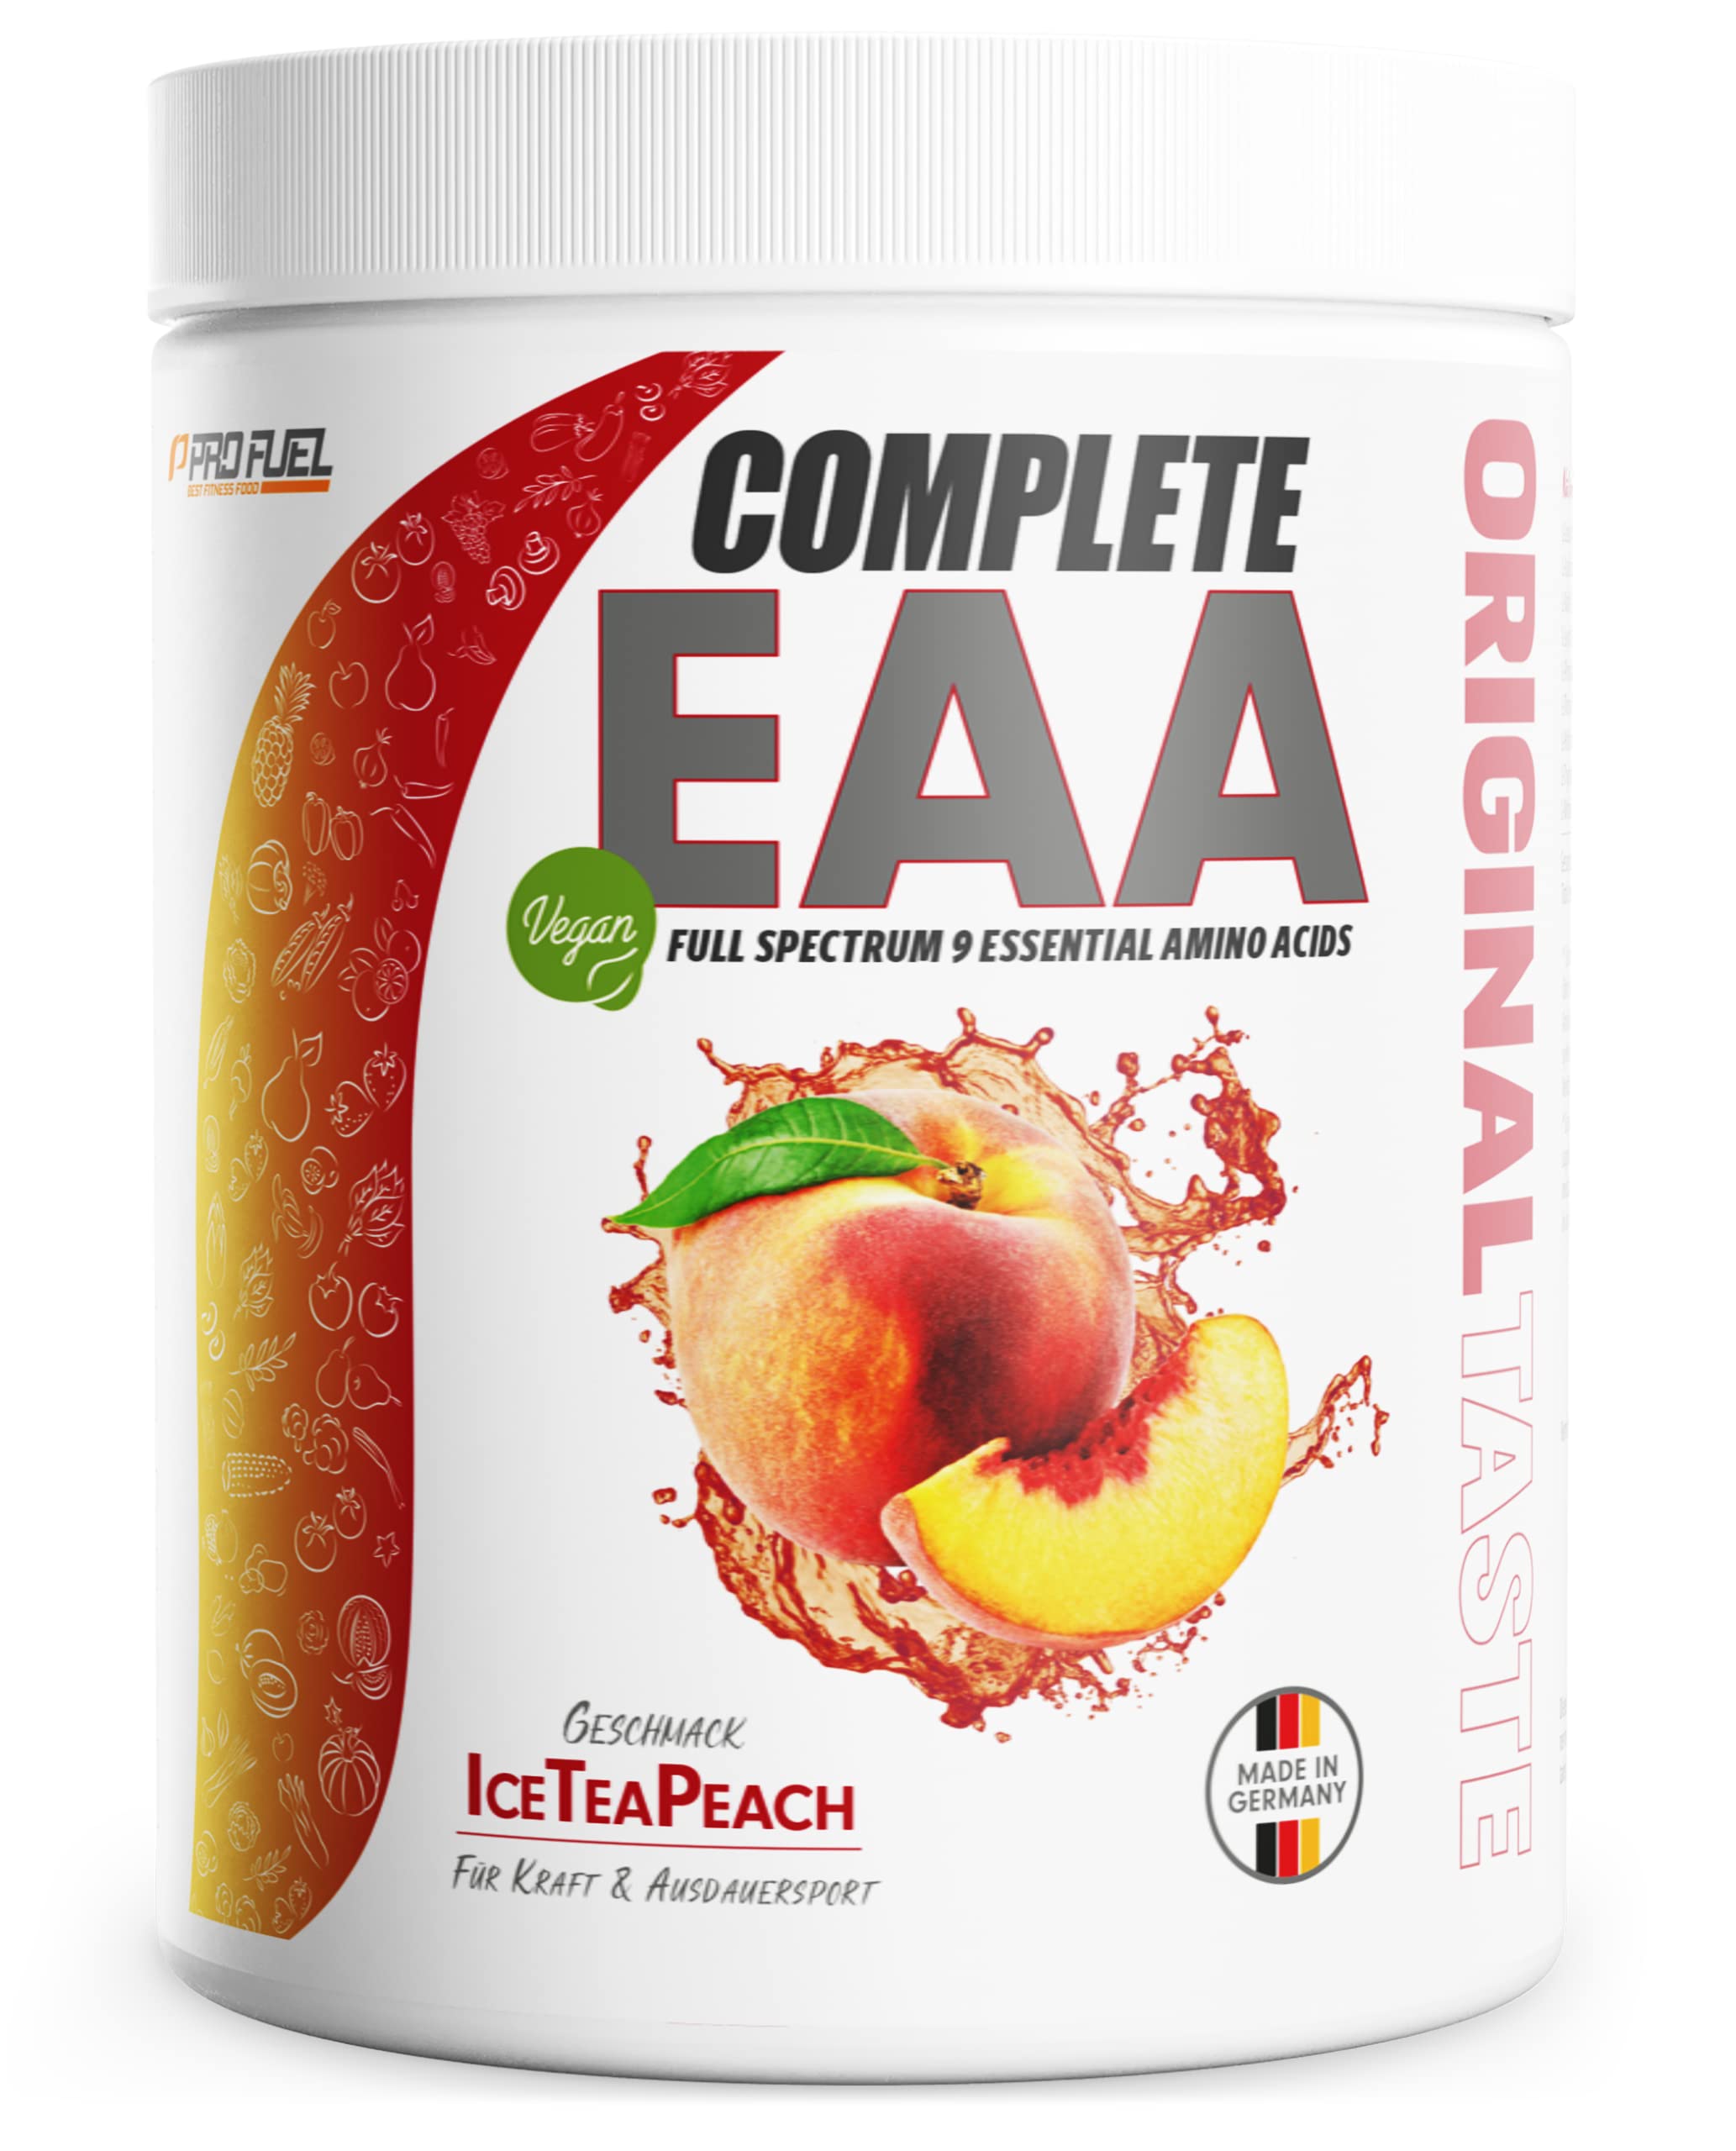 EAA Pulver 500g ICE TEA PEACH - 12.500mg essentielle Aminosäuren - unglaublich lecker & erfrischend - COMPLETE EAA mit allen 9 EAAs inkl. Histidin - EAA vegan Aminosäuren Pulver - Amino Workout Drink